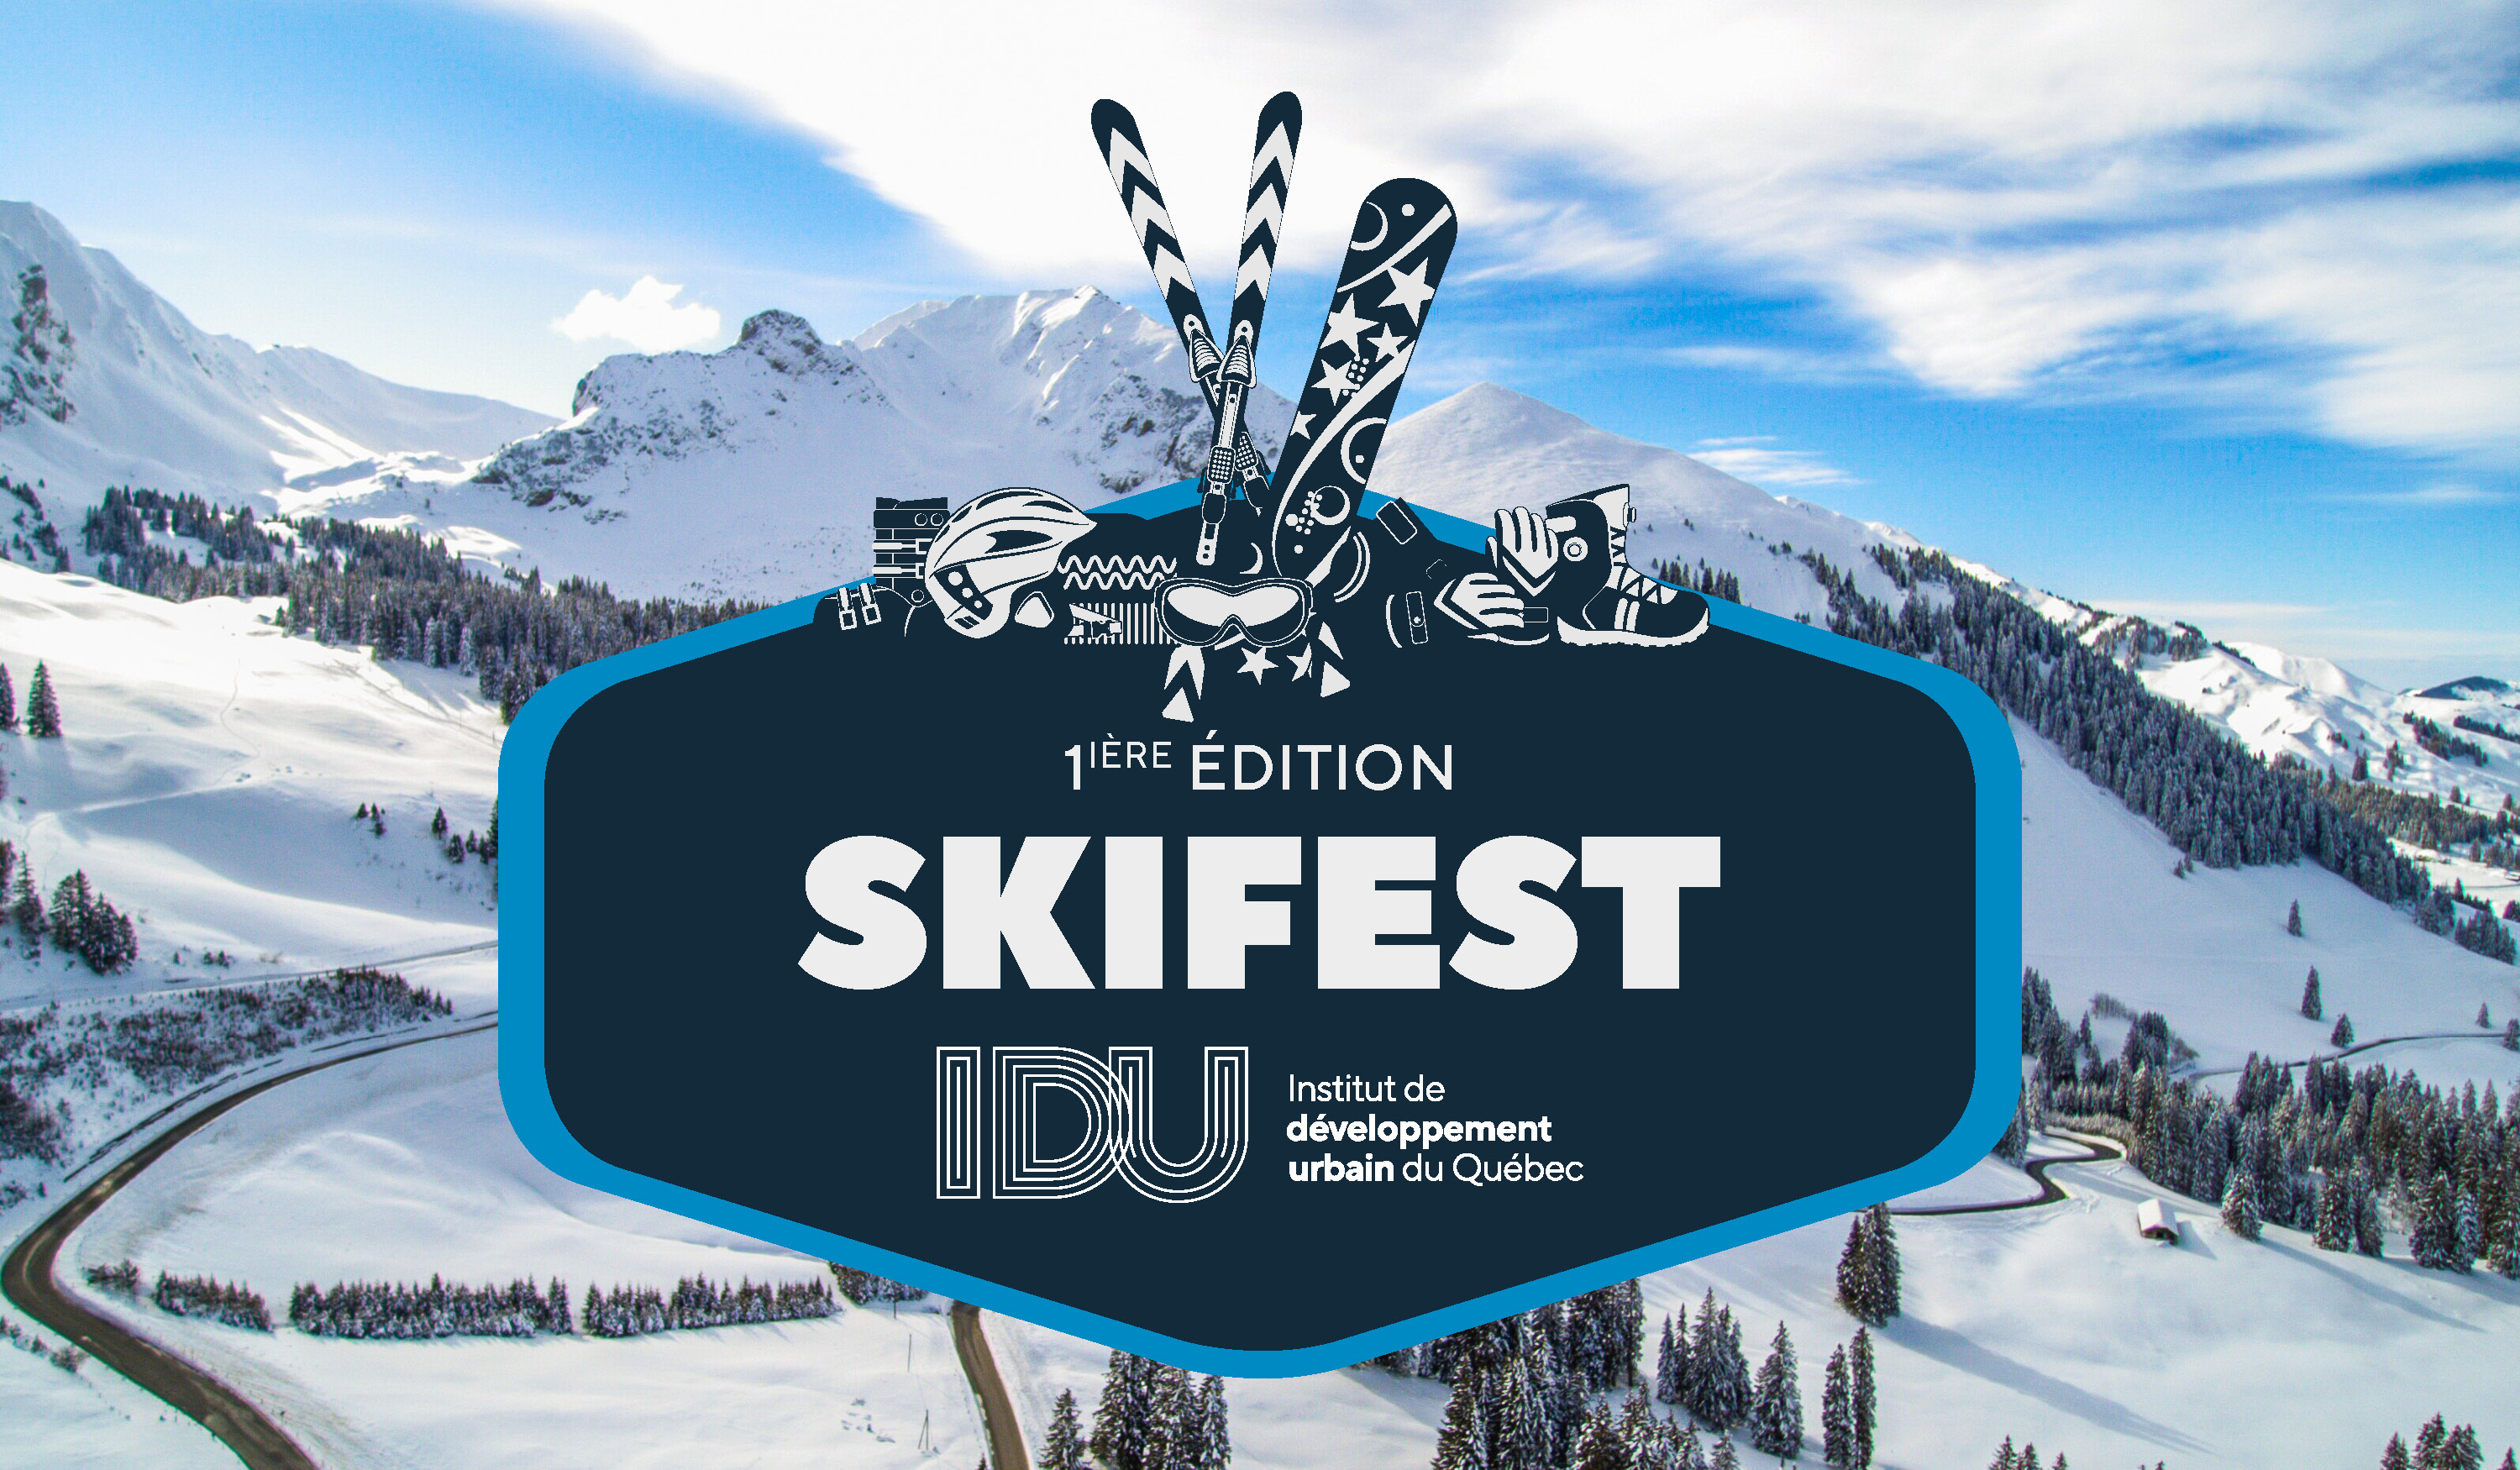 La première édition du Skifest de l'IDU